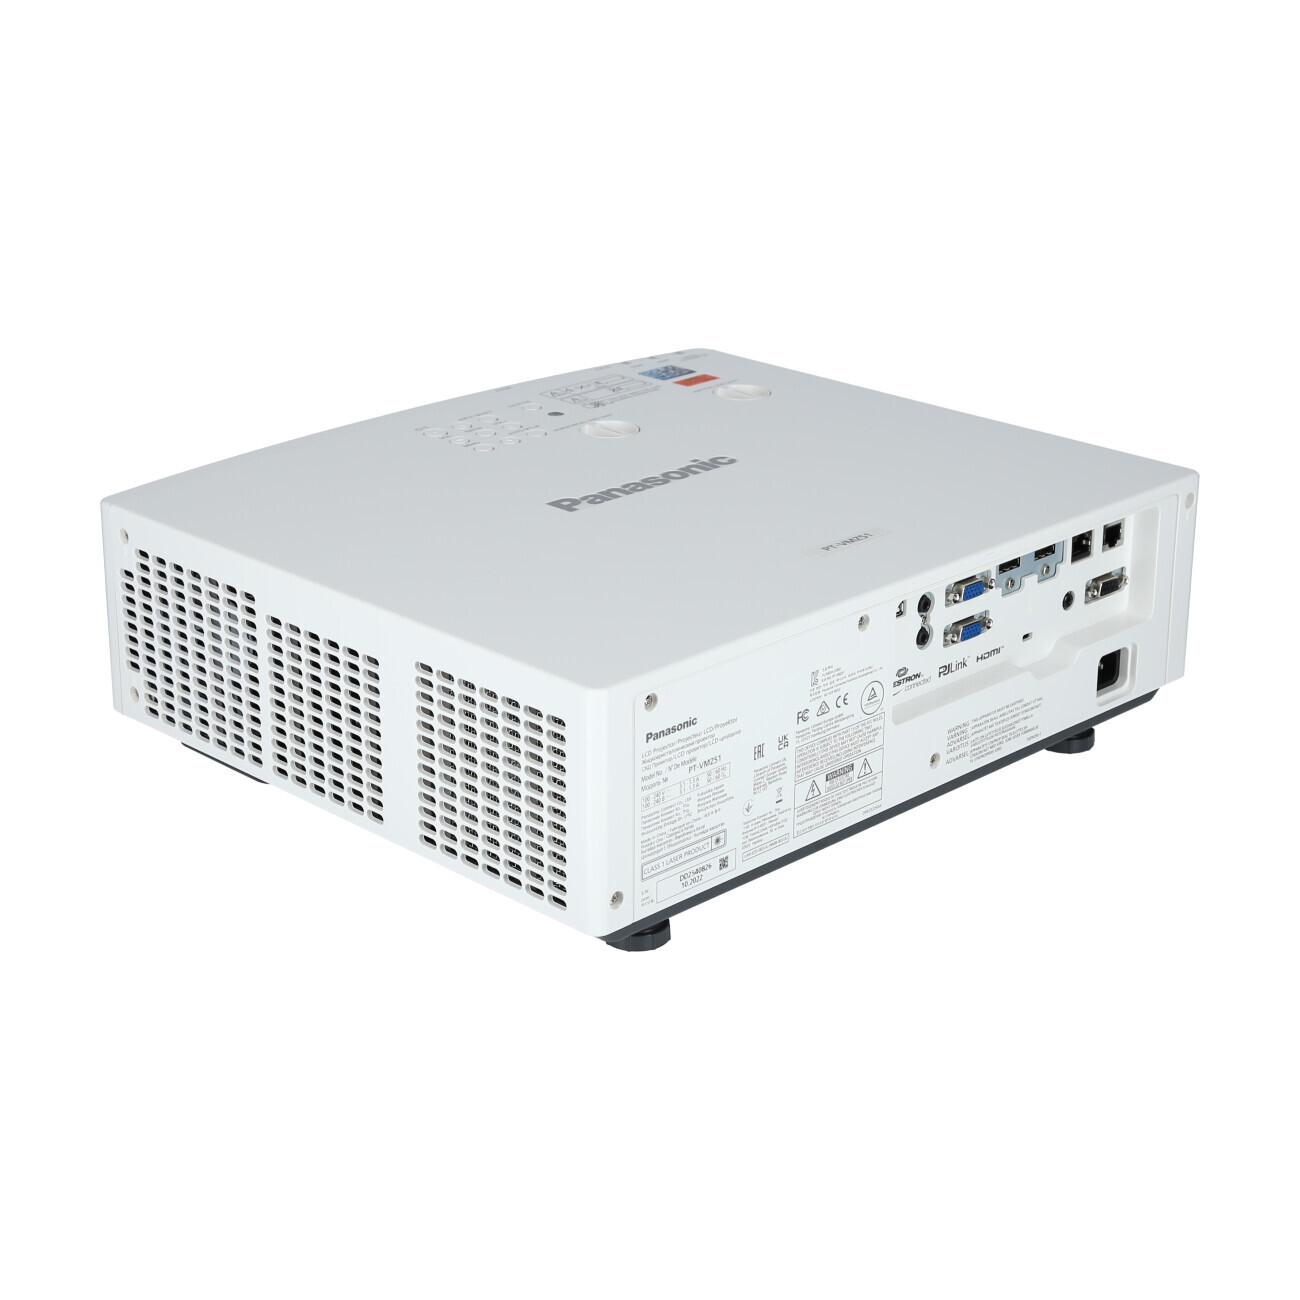 Vorschau: Panasonic PT-VMZ51 Laser-Business-Beamer weiß mit 5.200 ANSI-Lumen und WUXGA - Demo